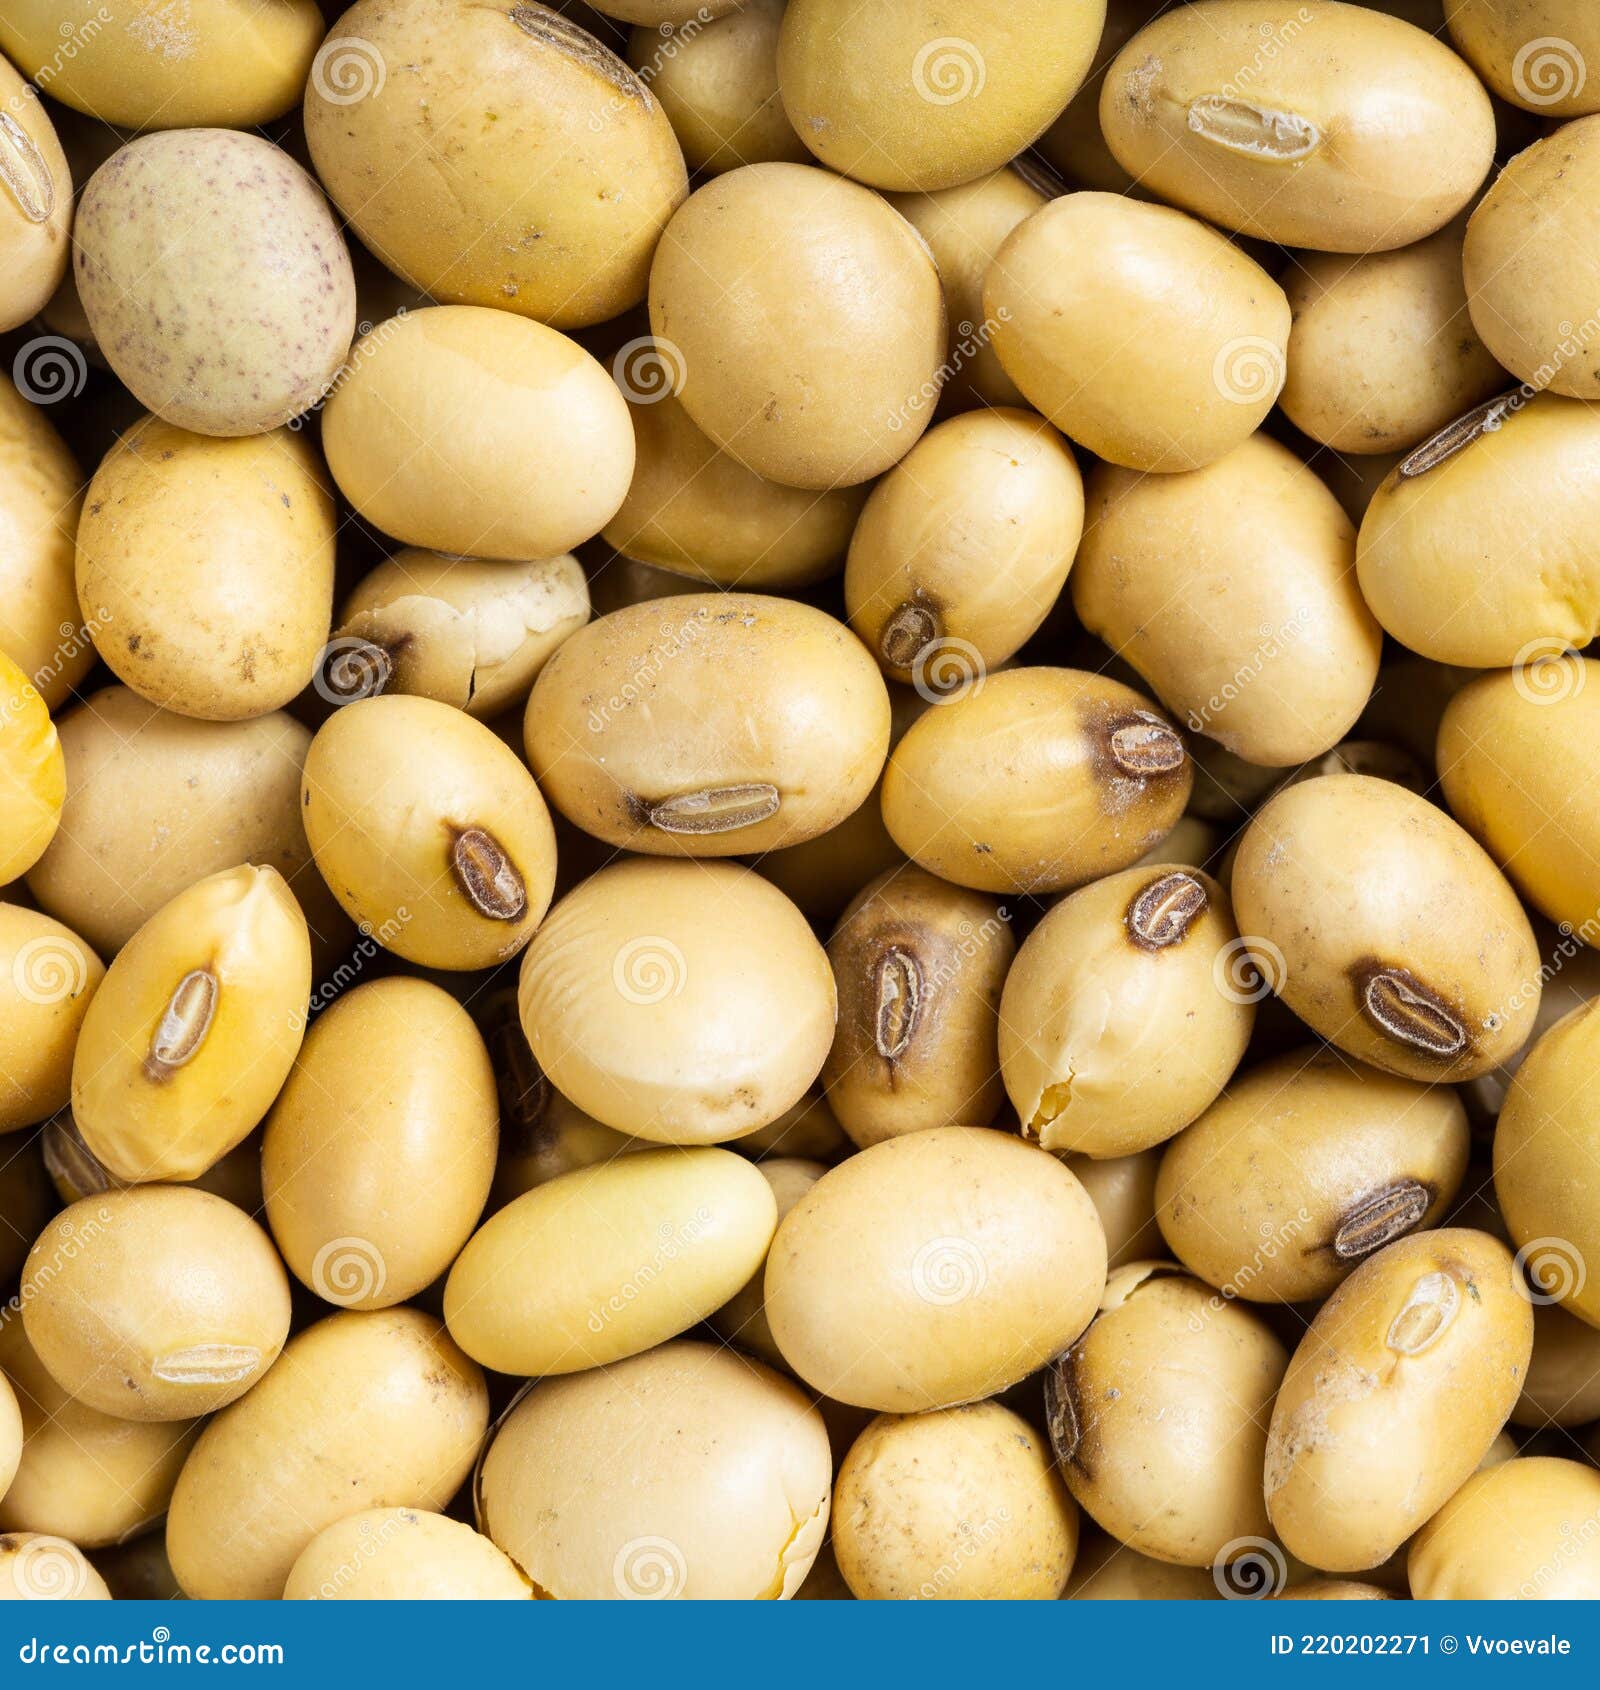 大黄豆 优质食用黄豆 食用大豆 超大粒 能发芽 生豆芽-阿里巴巴